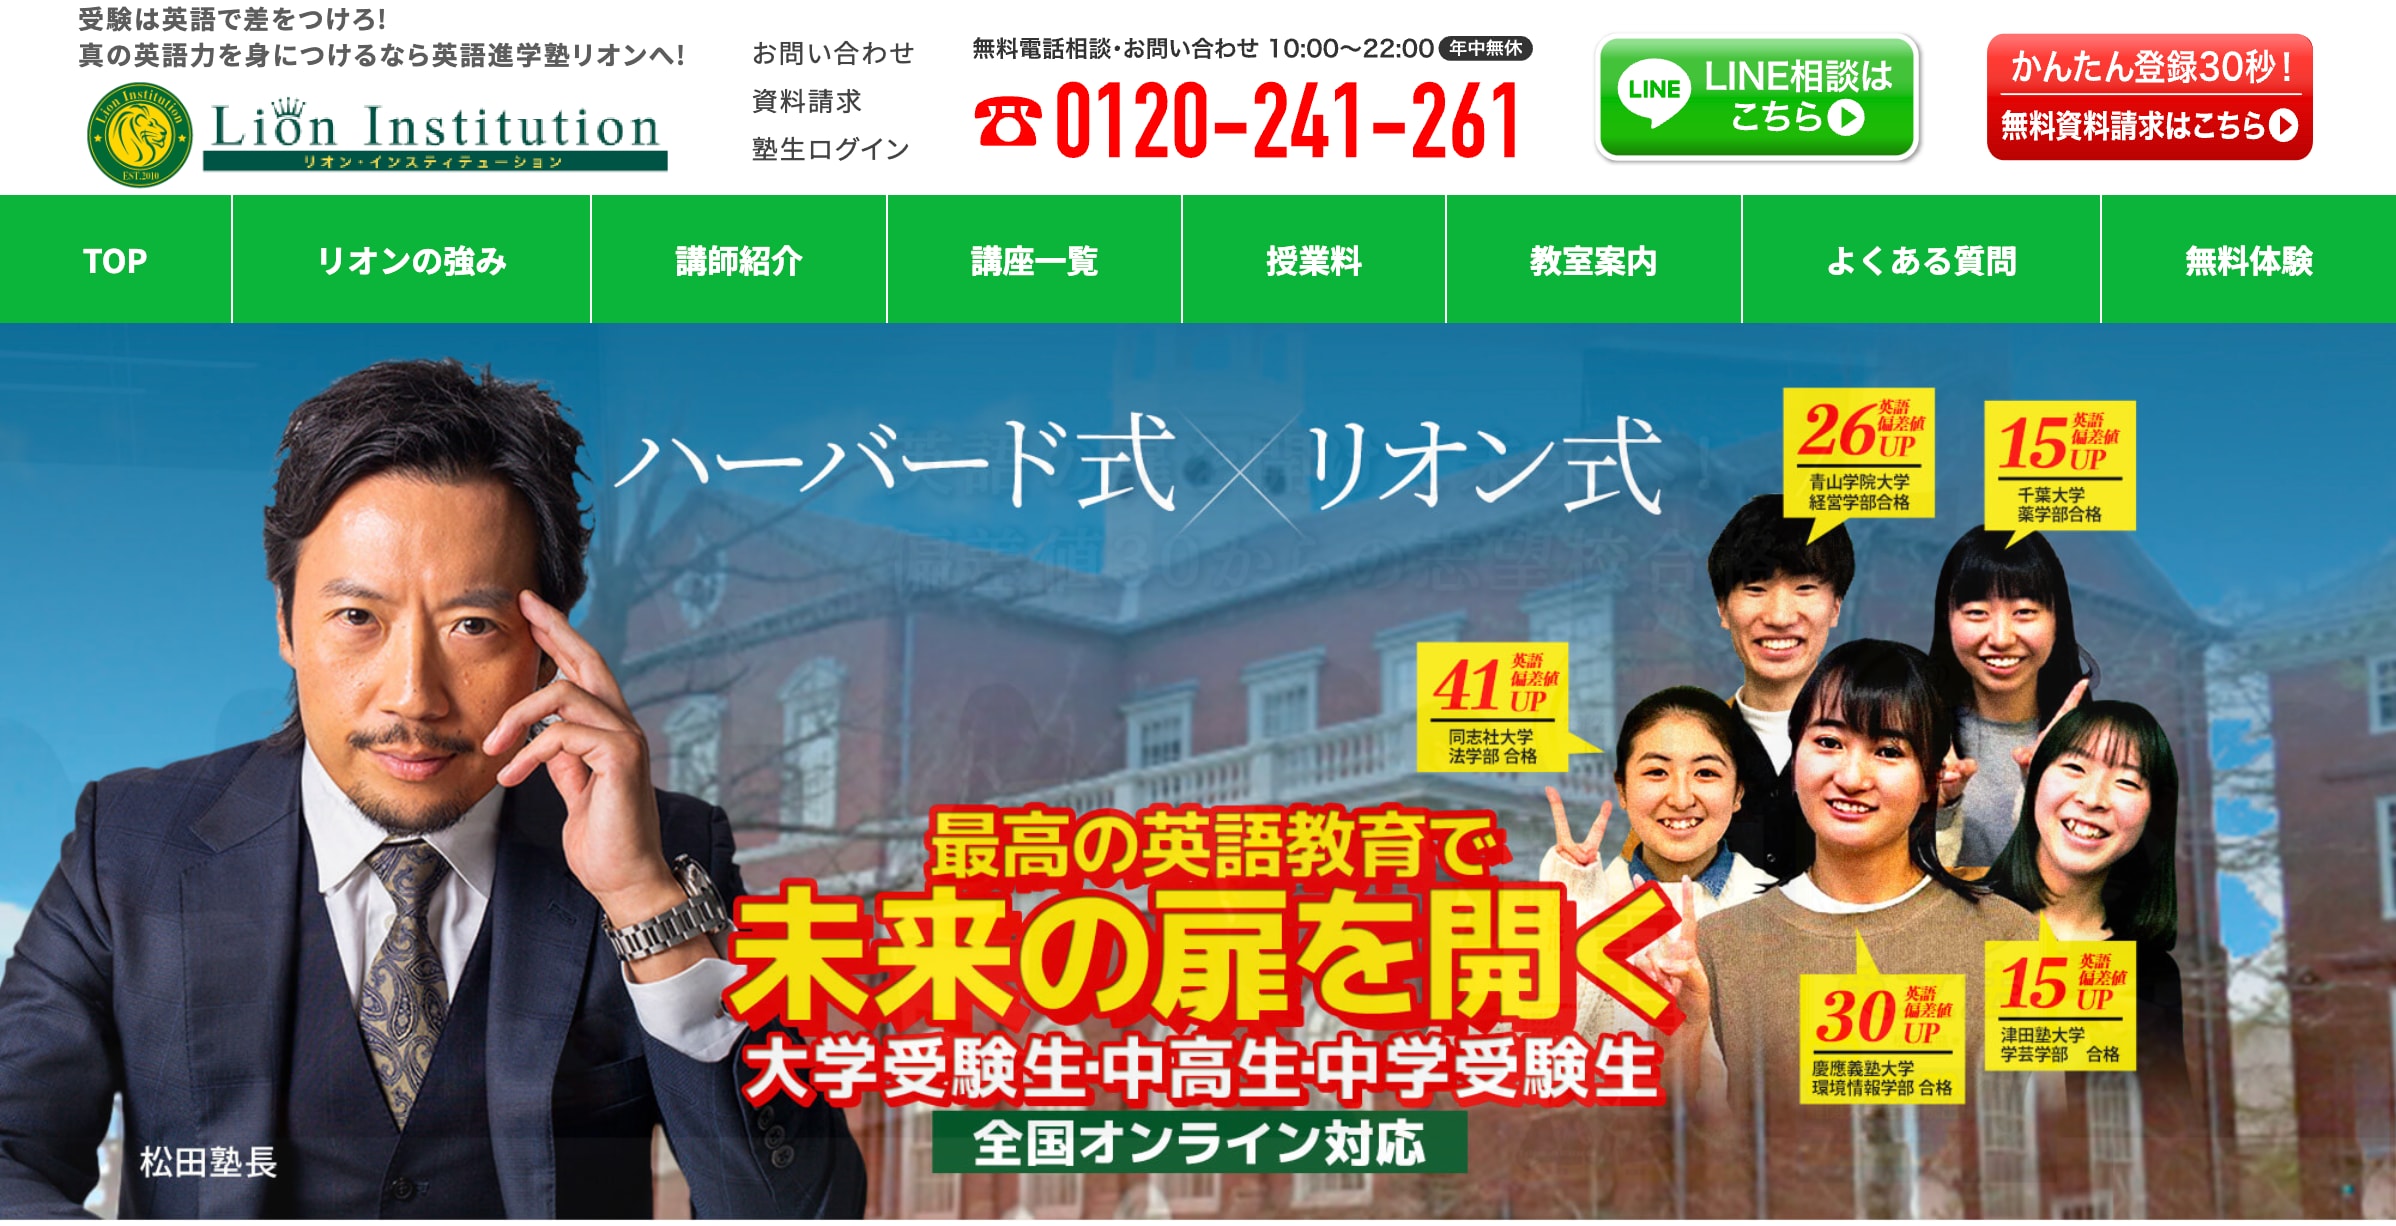 英語進学塾リオンのサイトのトップ画像